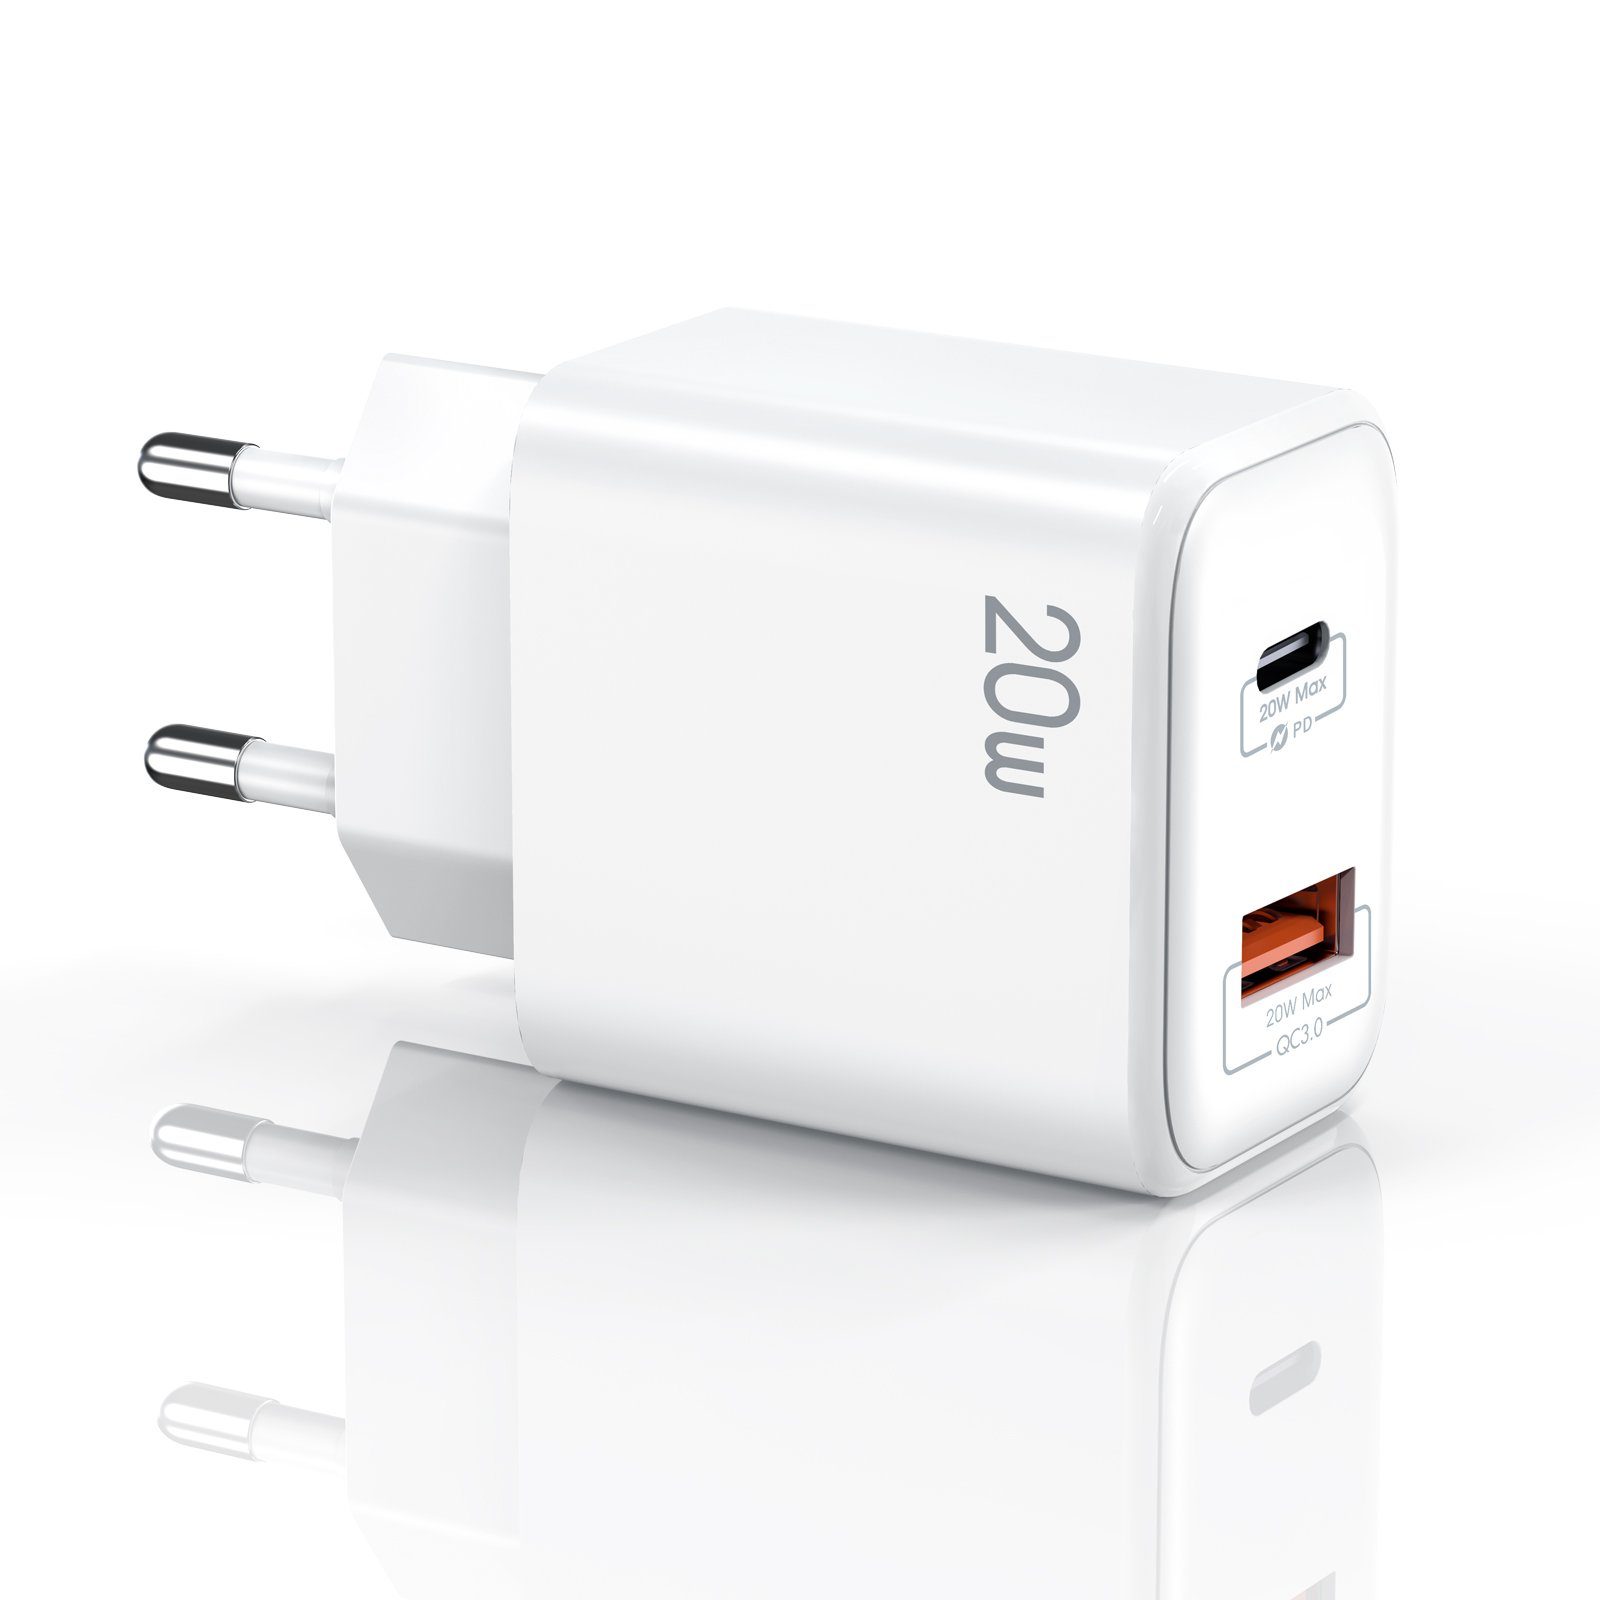 neue dawn 20W USB C Ladegerät für iPhone 12 Pro Netzteil Schnellladegerät  USB-Ladegerät (1, 1, Schnellladegerät)